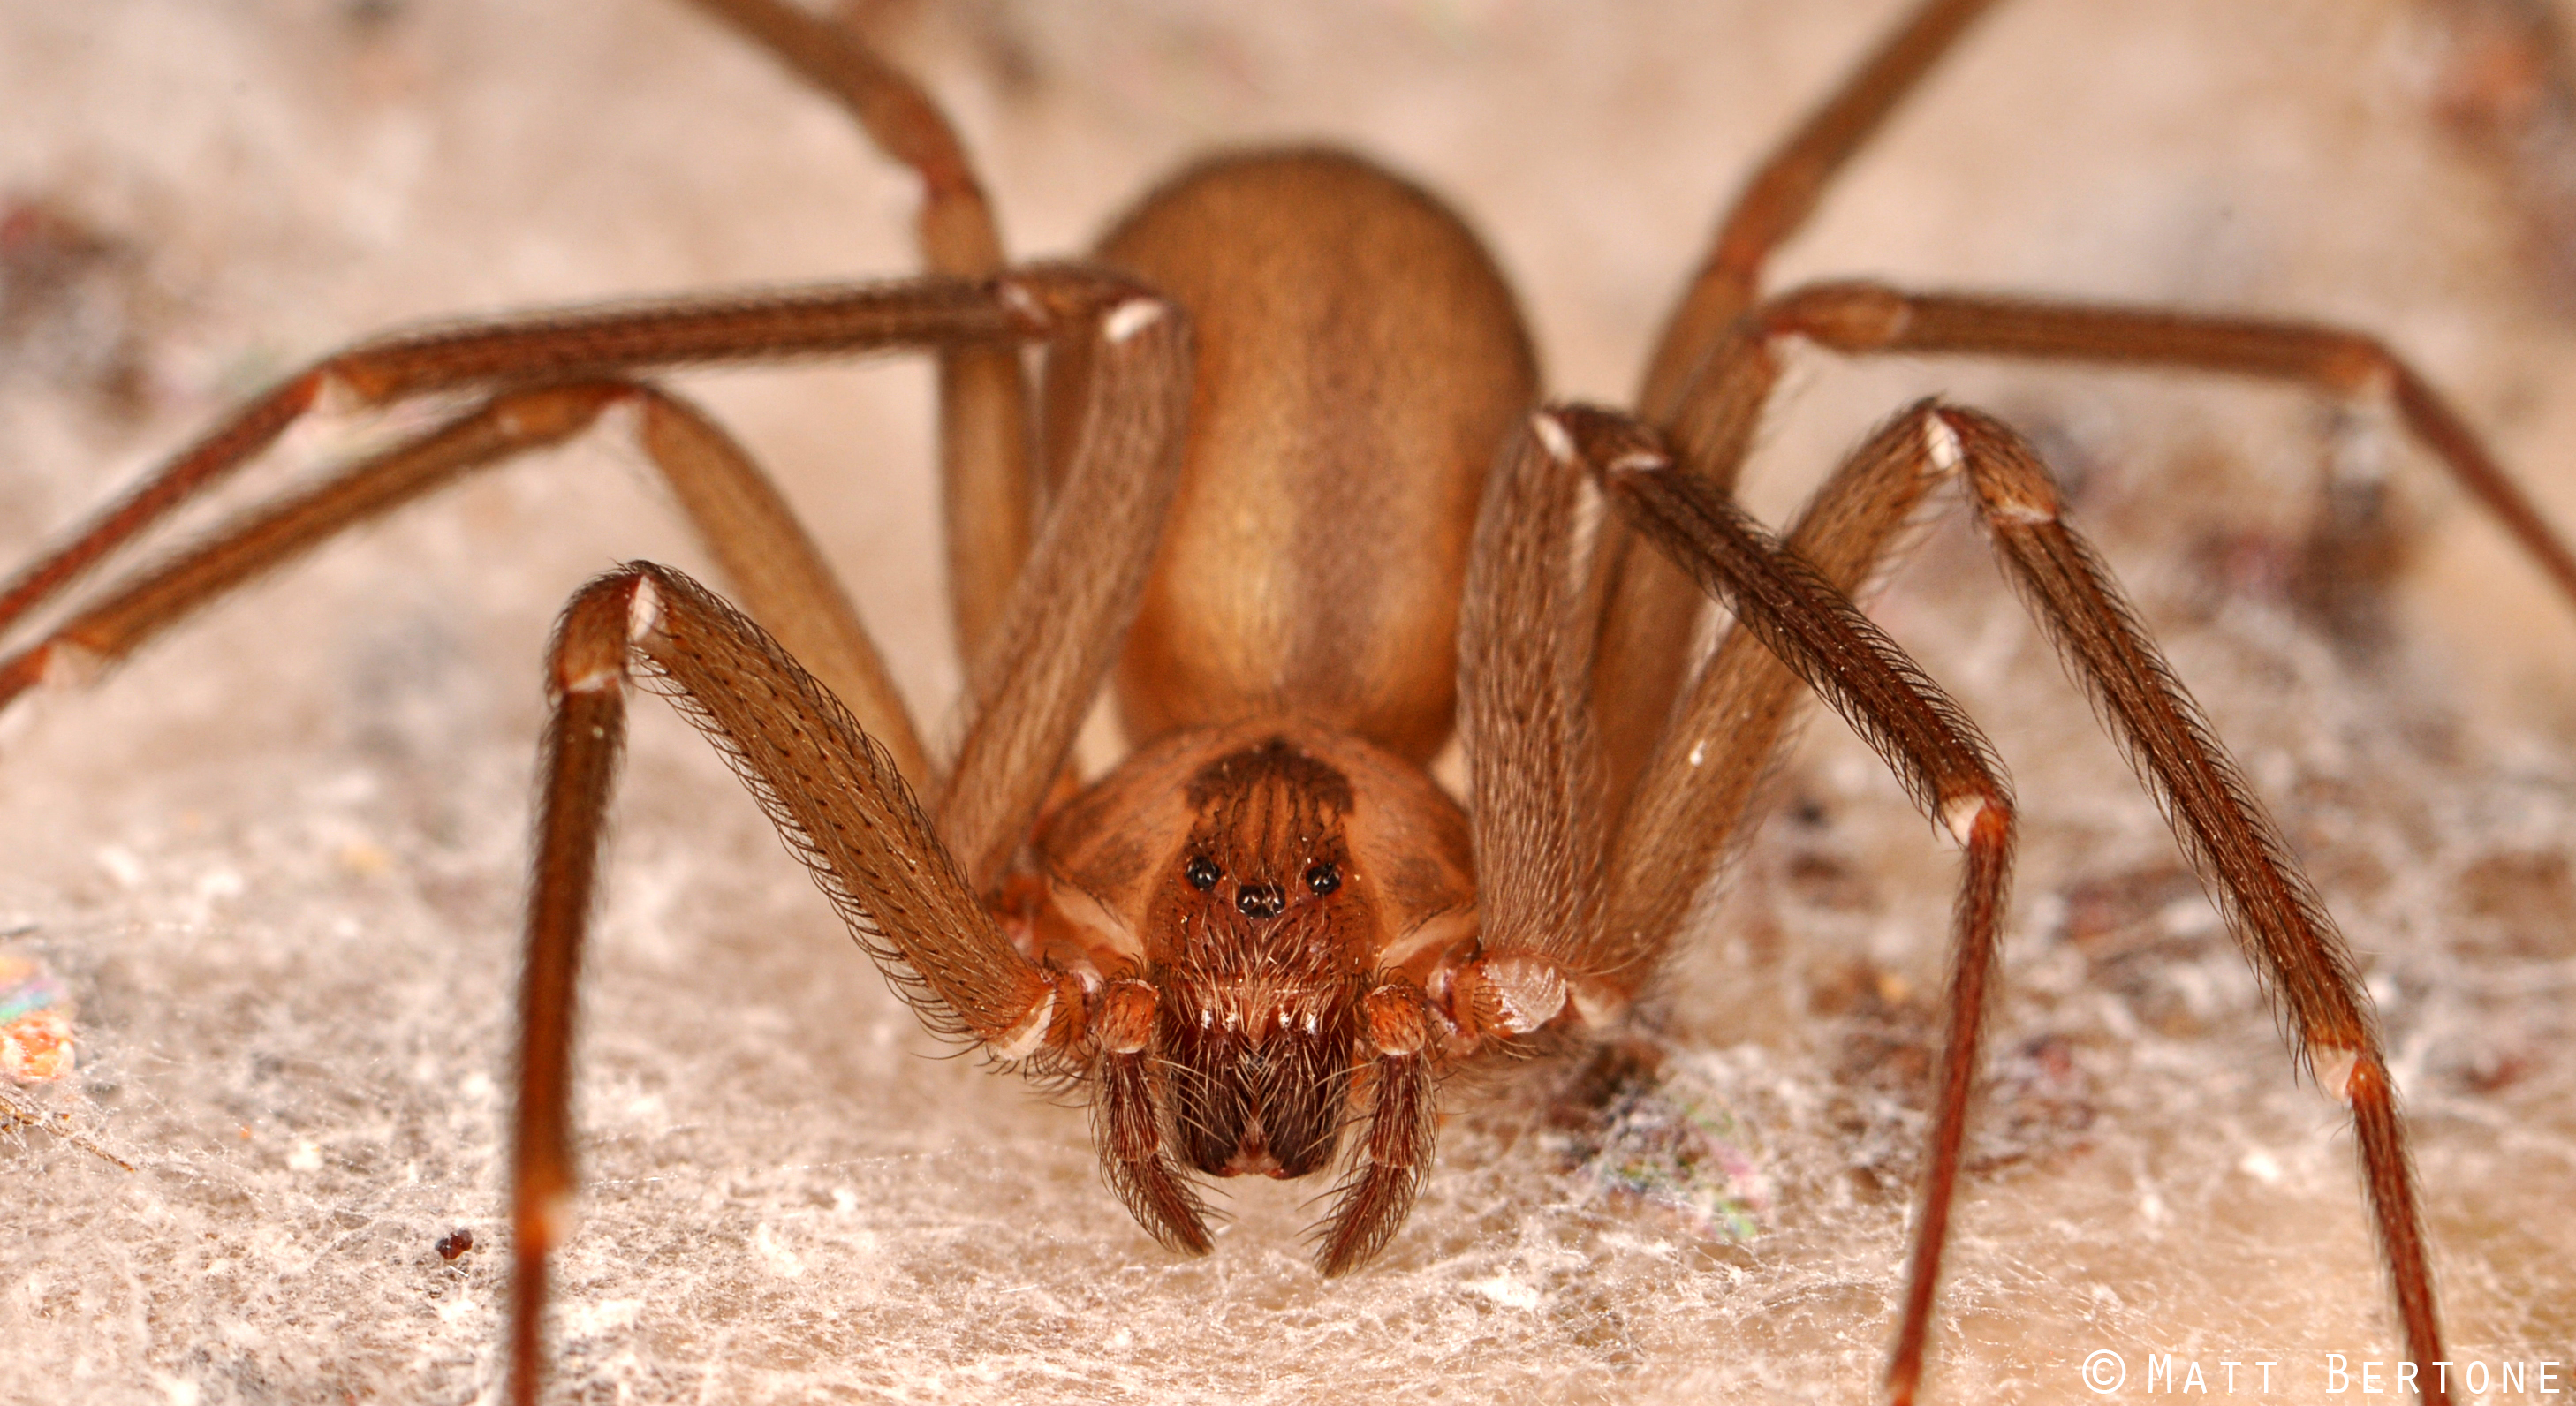 Bite, Brown Recluse Spider